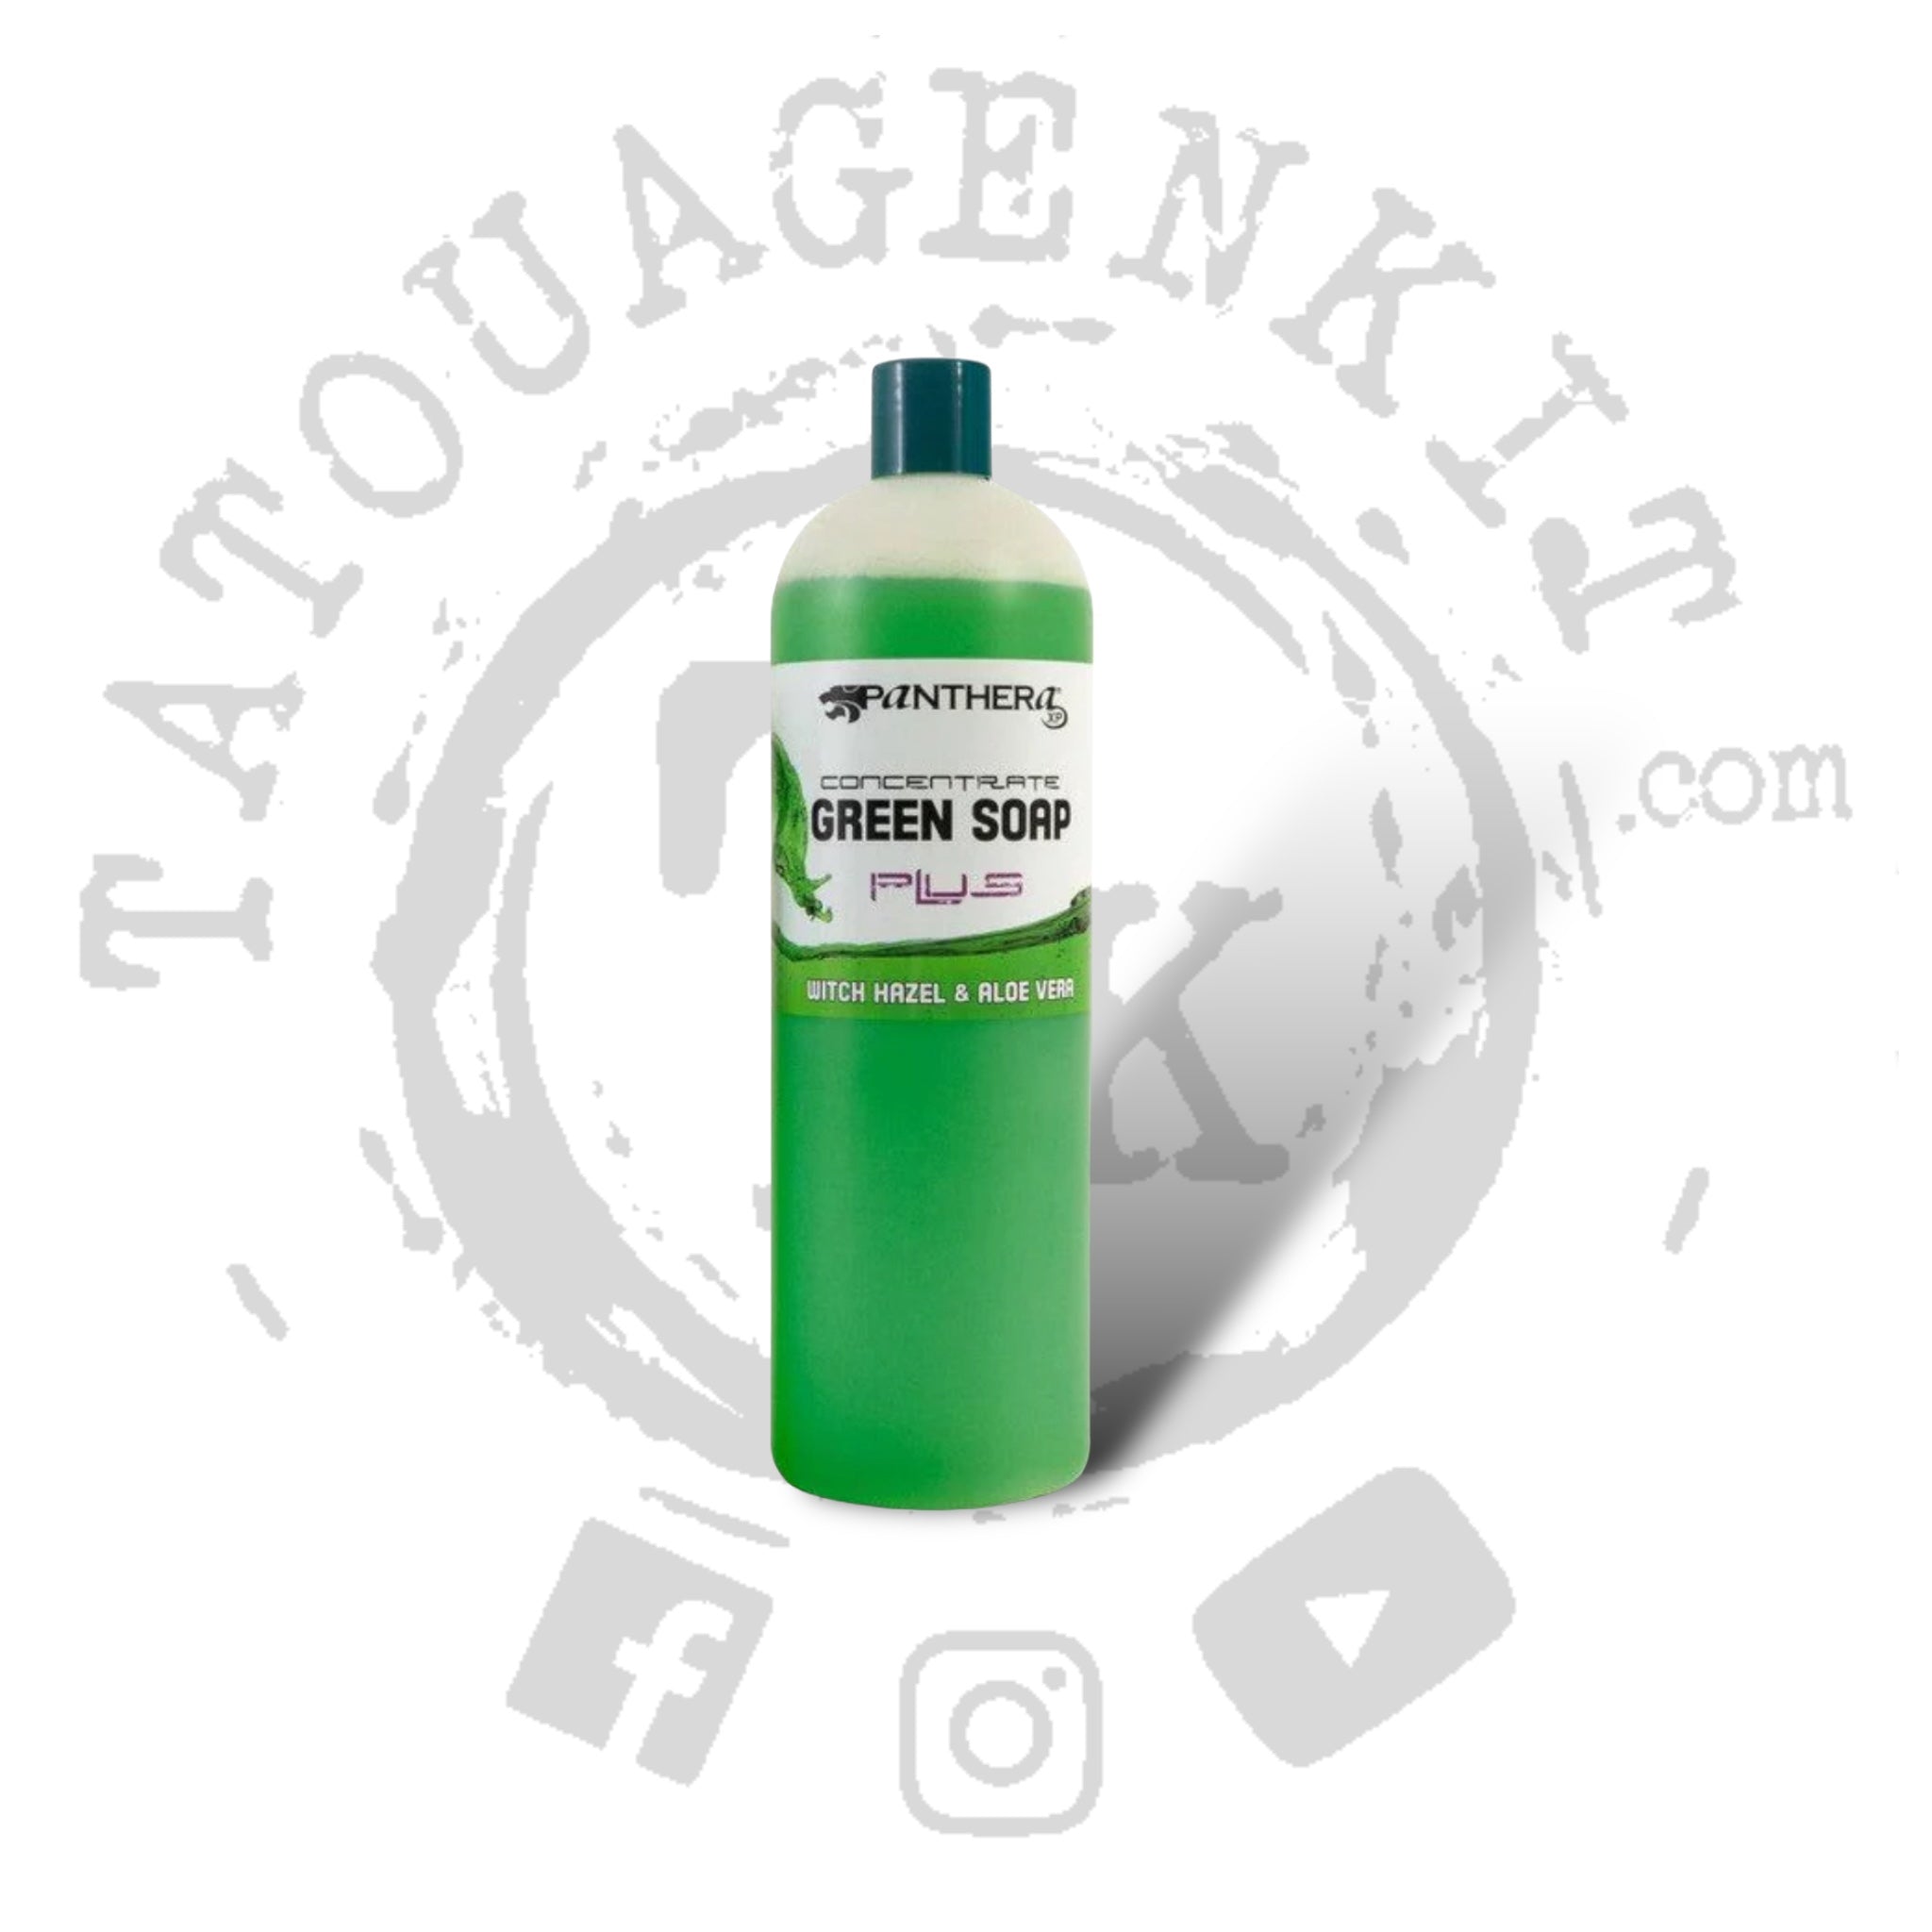 Savon Panthera Green soap